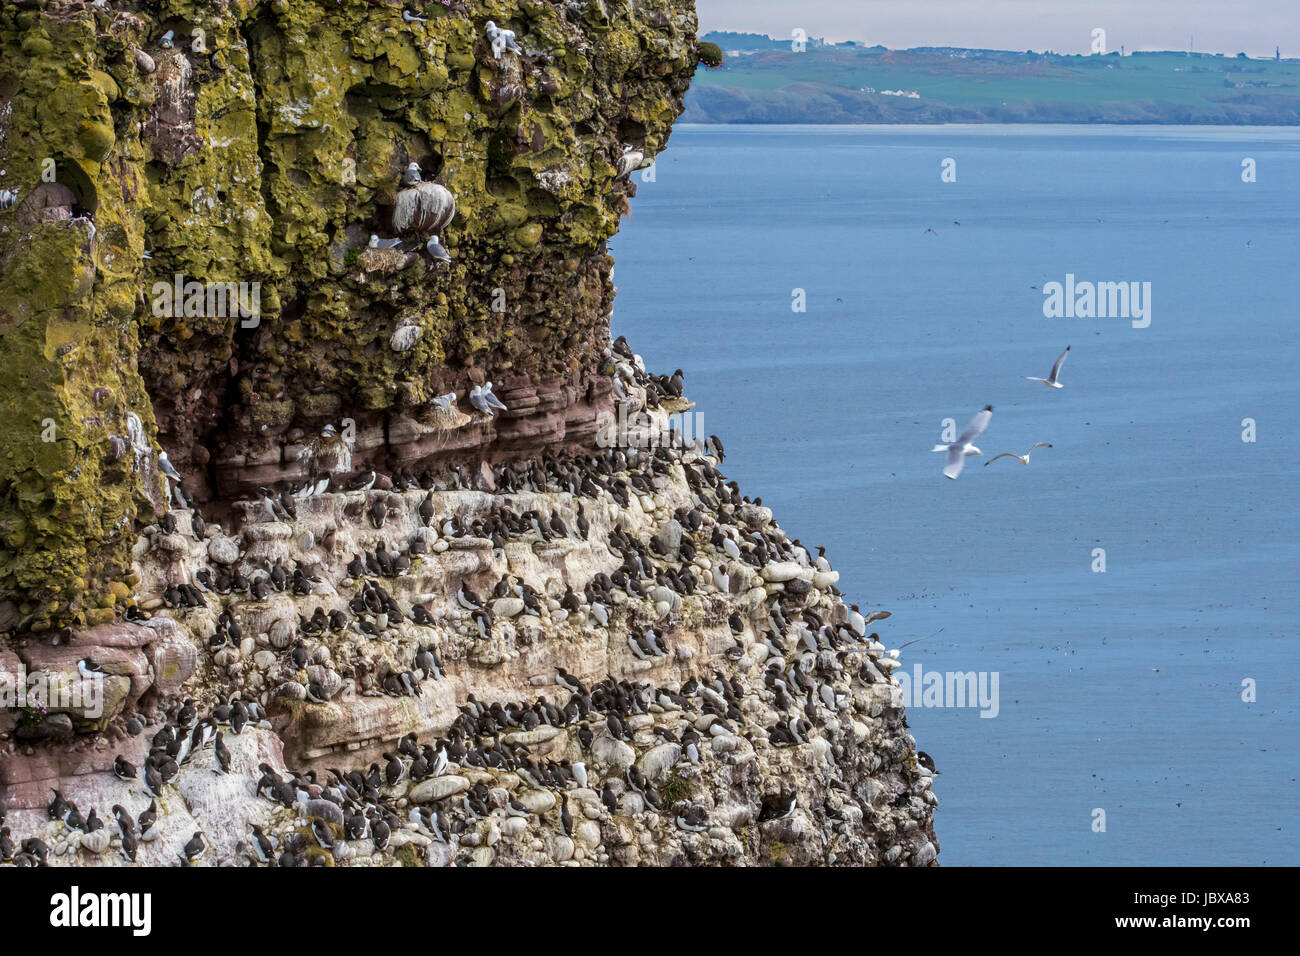 Les mouettes tridactyles, les Petits Pingouins et guillemots nichant sur les corniches des falaises de roche en face en colonie d'oiseaux au printemps, Fowlsheugh, Ecosse, Royaume-Uni Banque D'Images